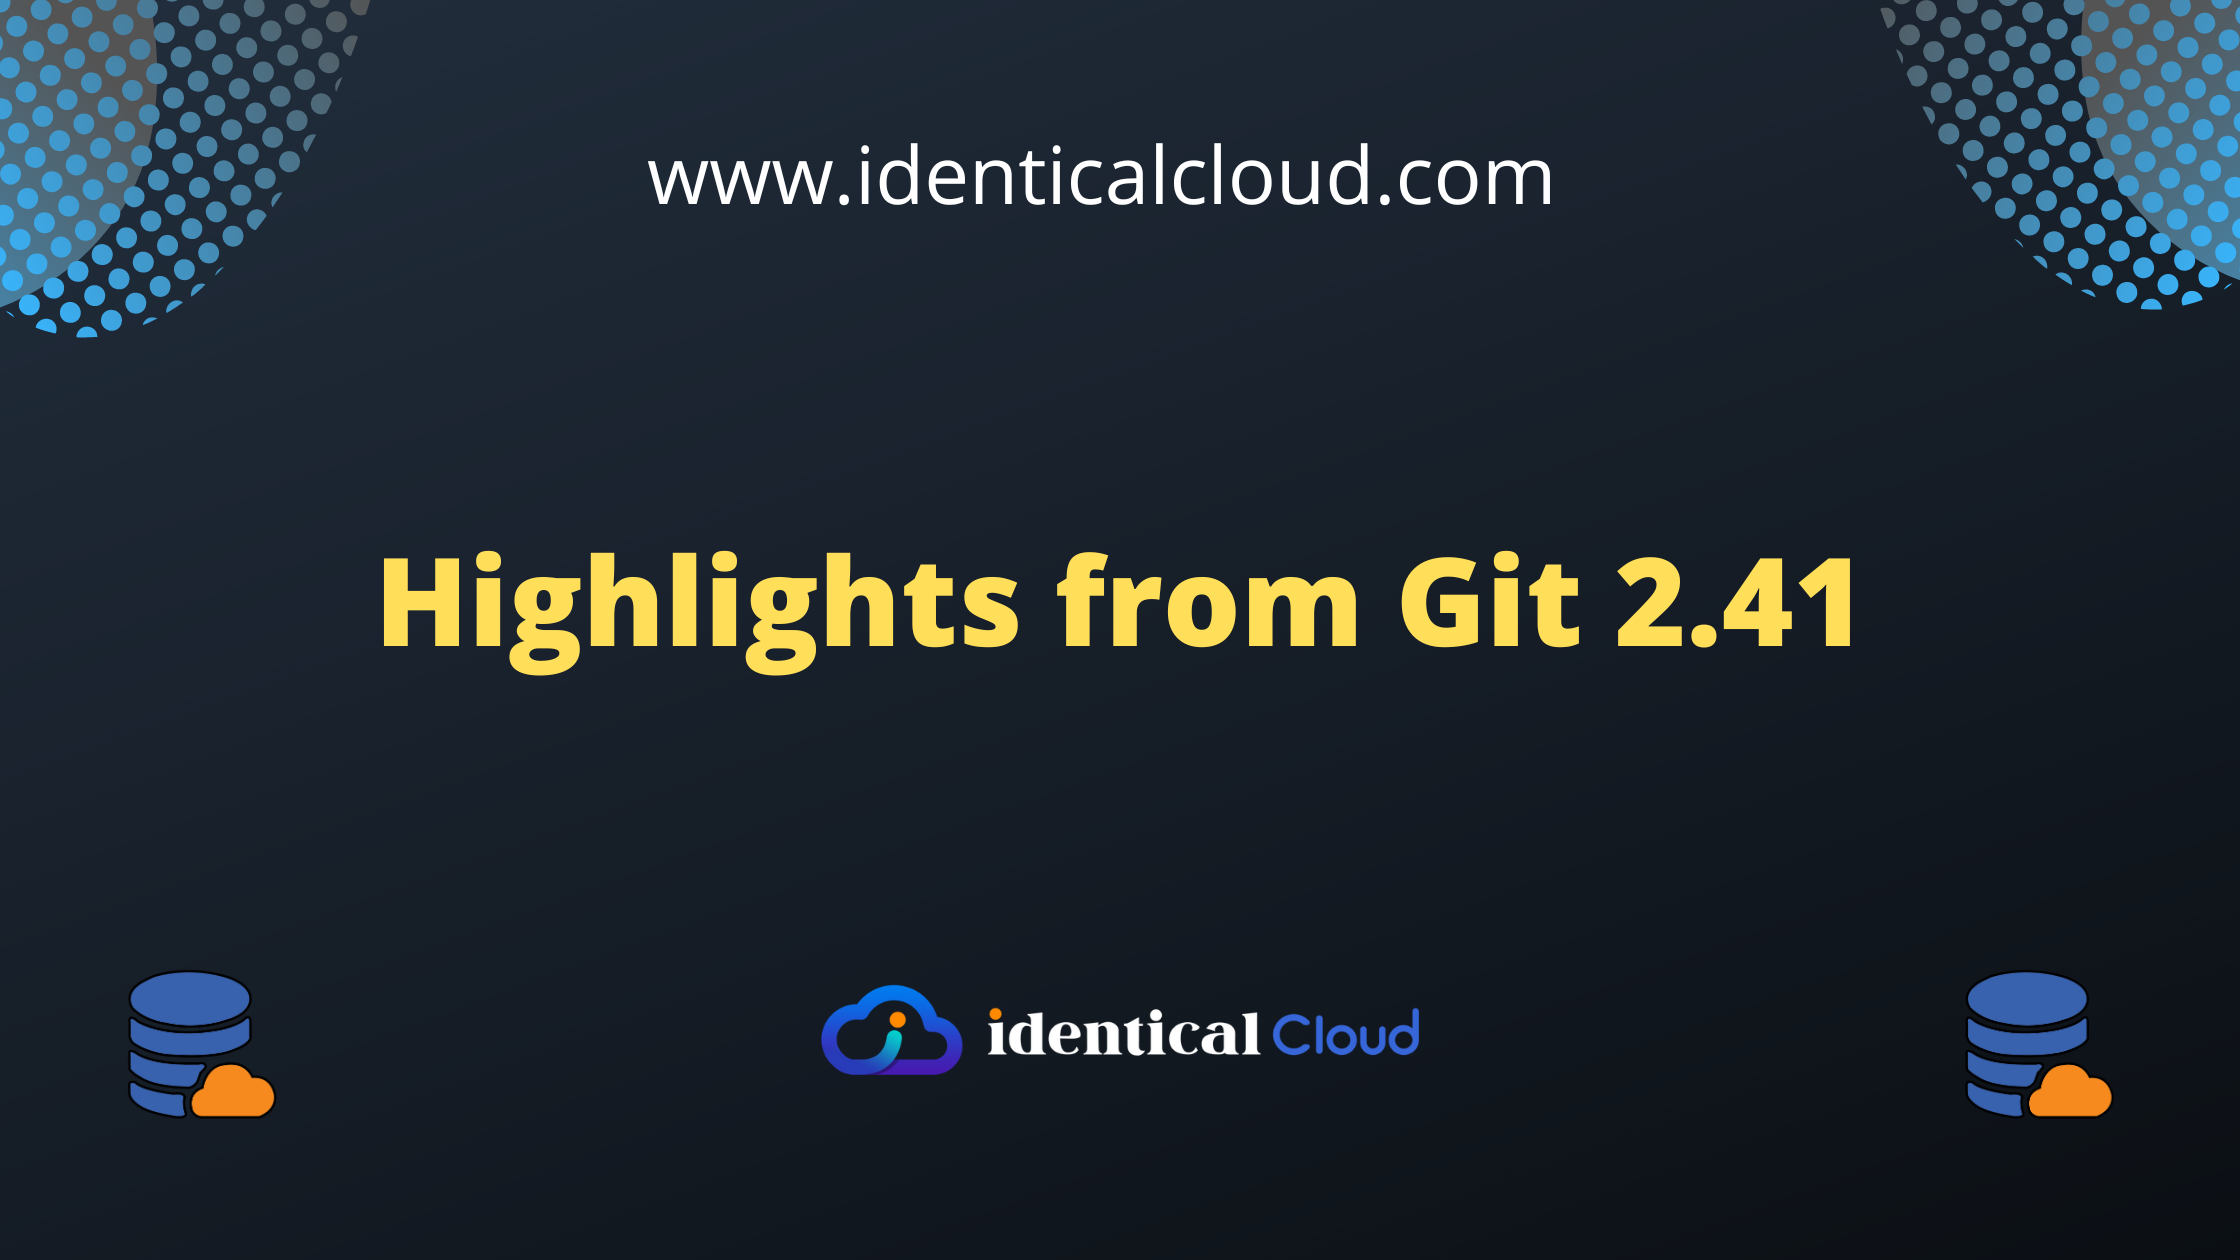 Highlights from Git 2.41 - identicalcloud.com